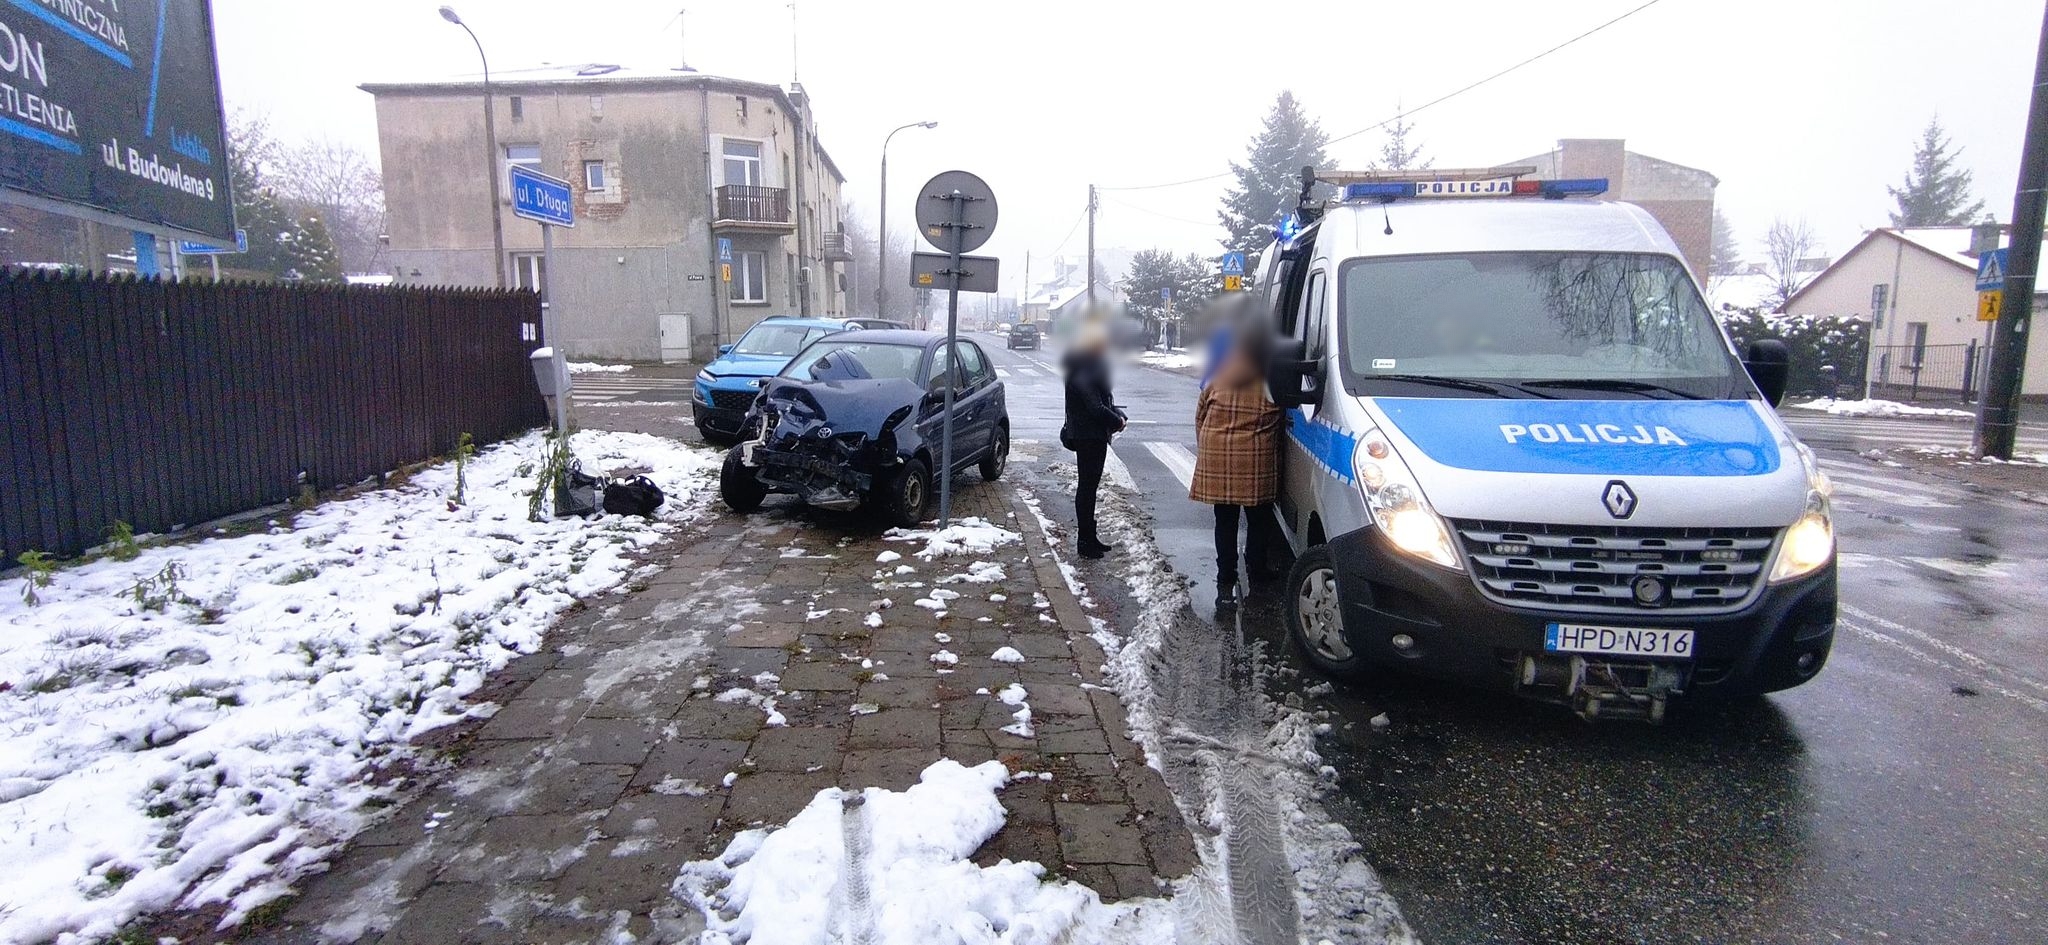 Zderzenie na skrzyżowaniu w Lublinie, dwa pojazdy rozbite (zdjęcia)